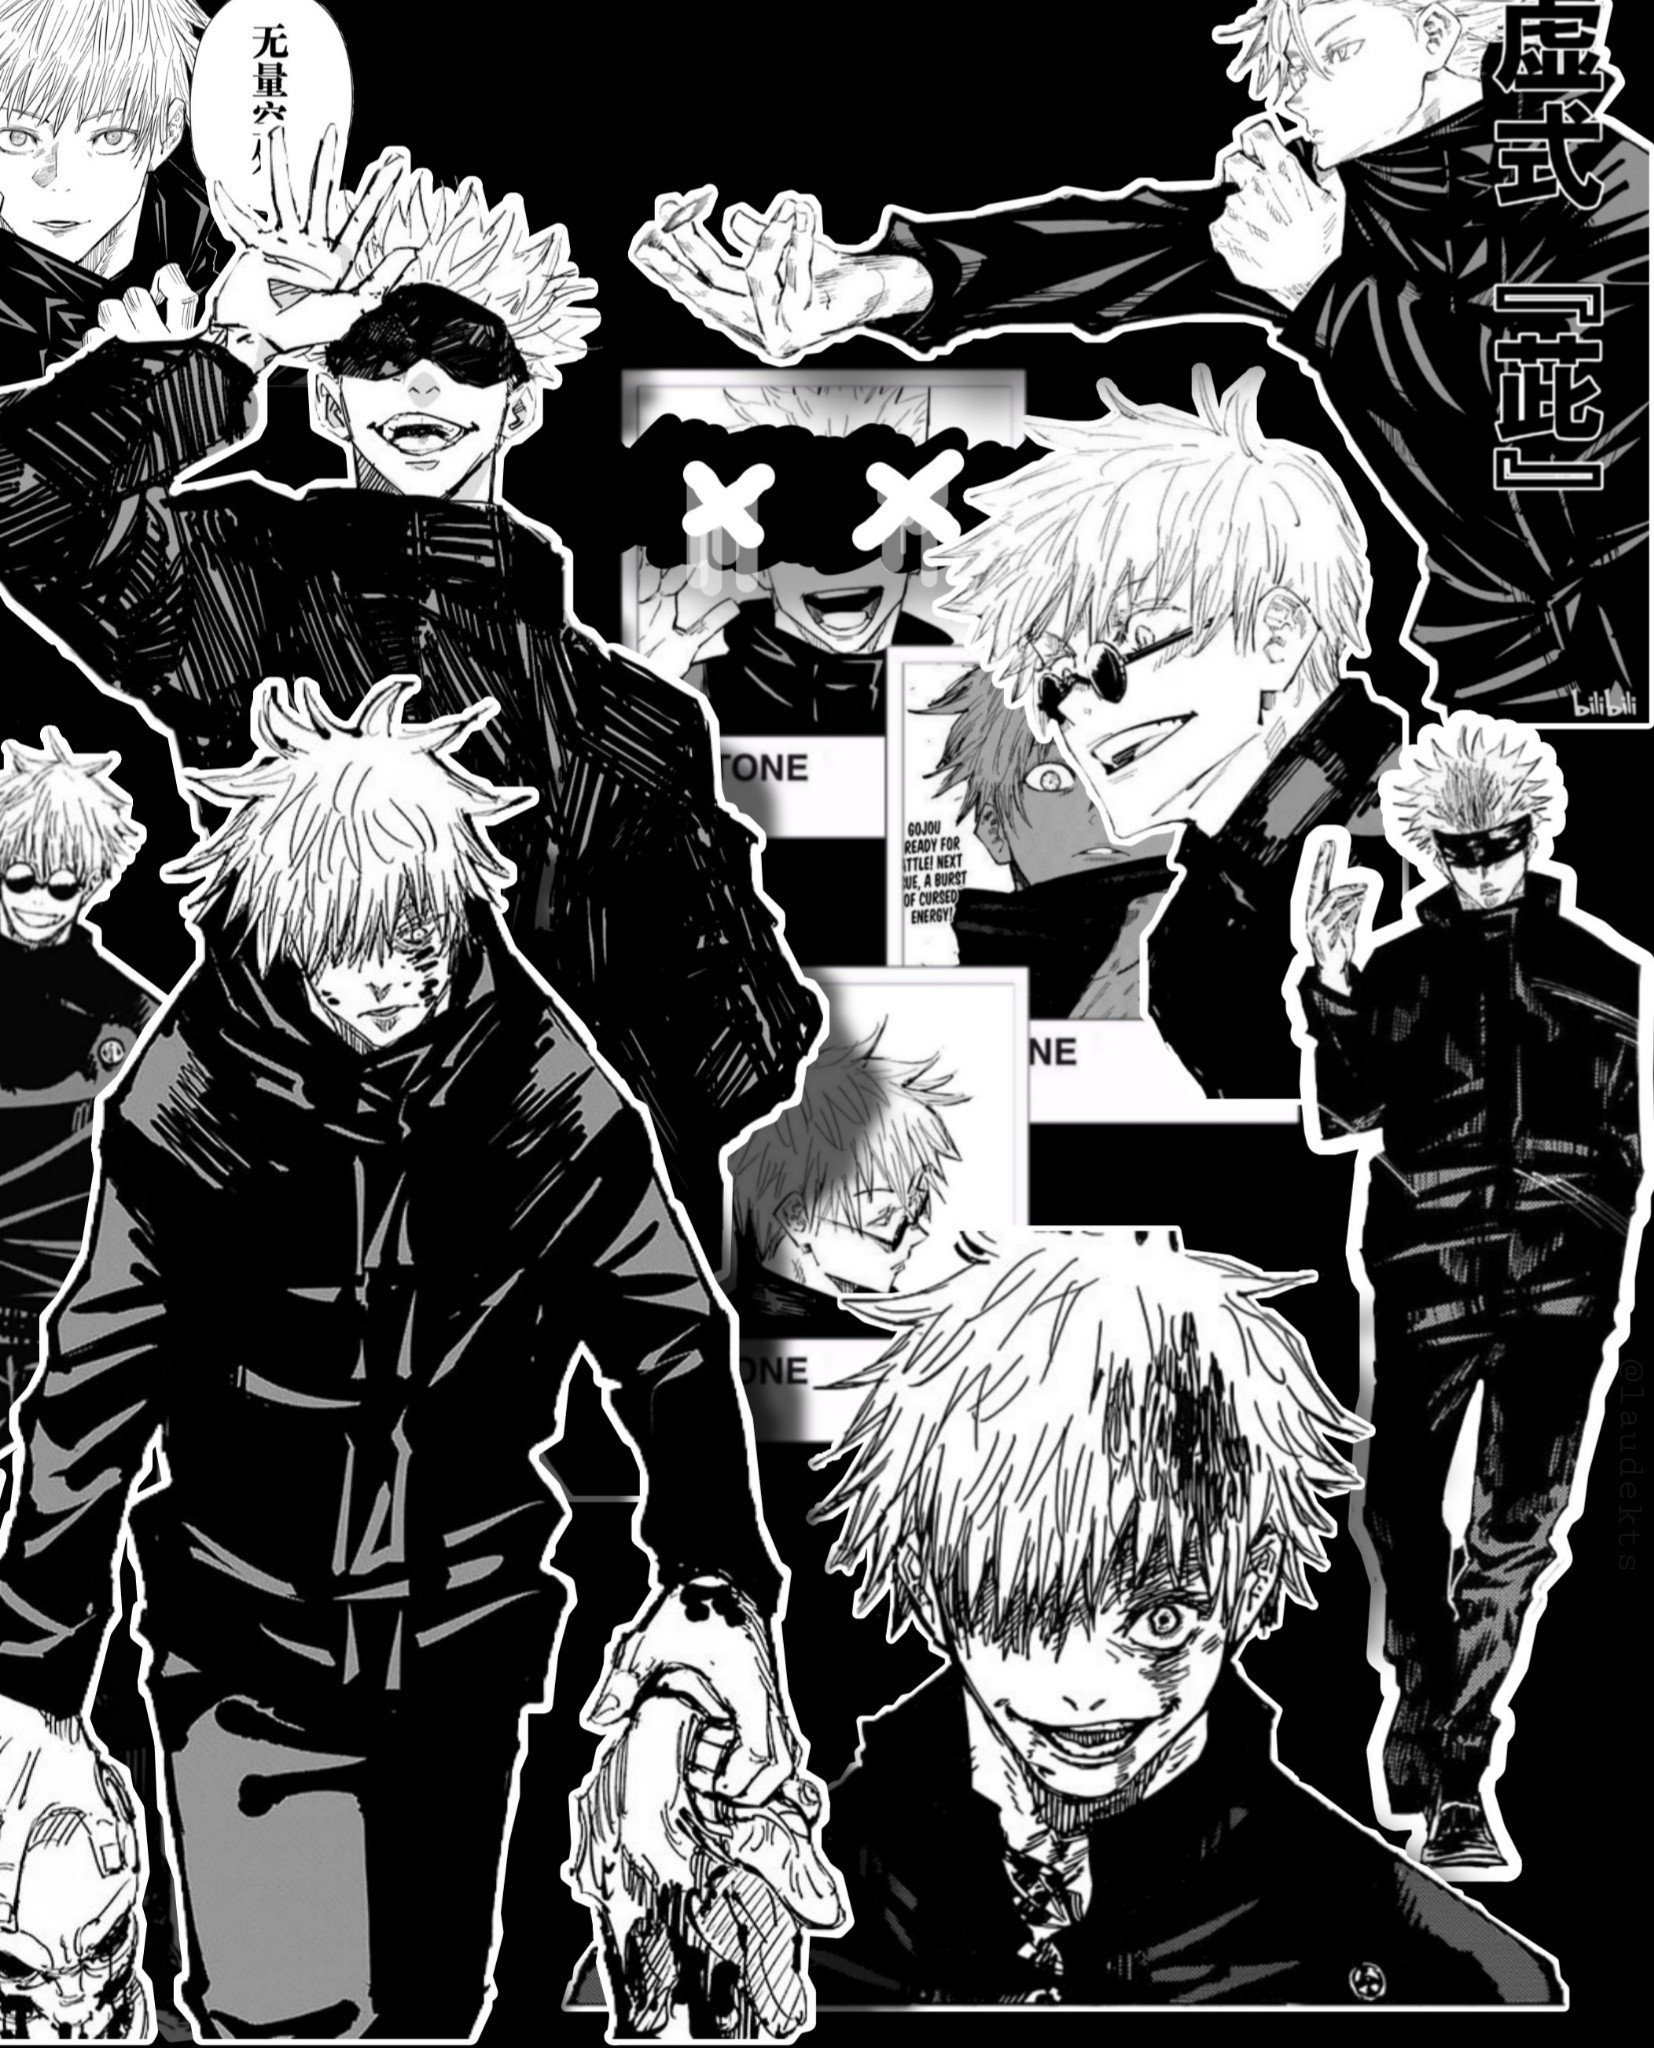 Gojo Manga Wallpapers - Wallpaper Cave